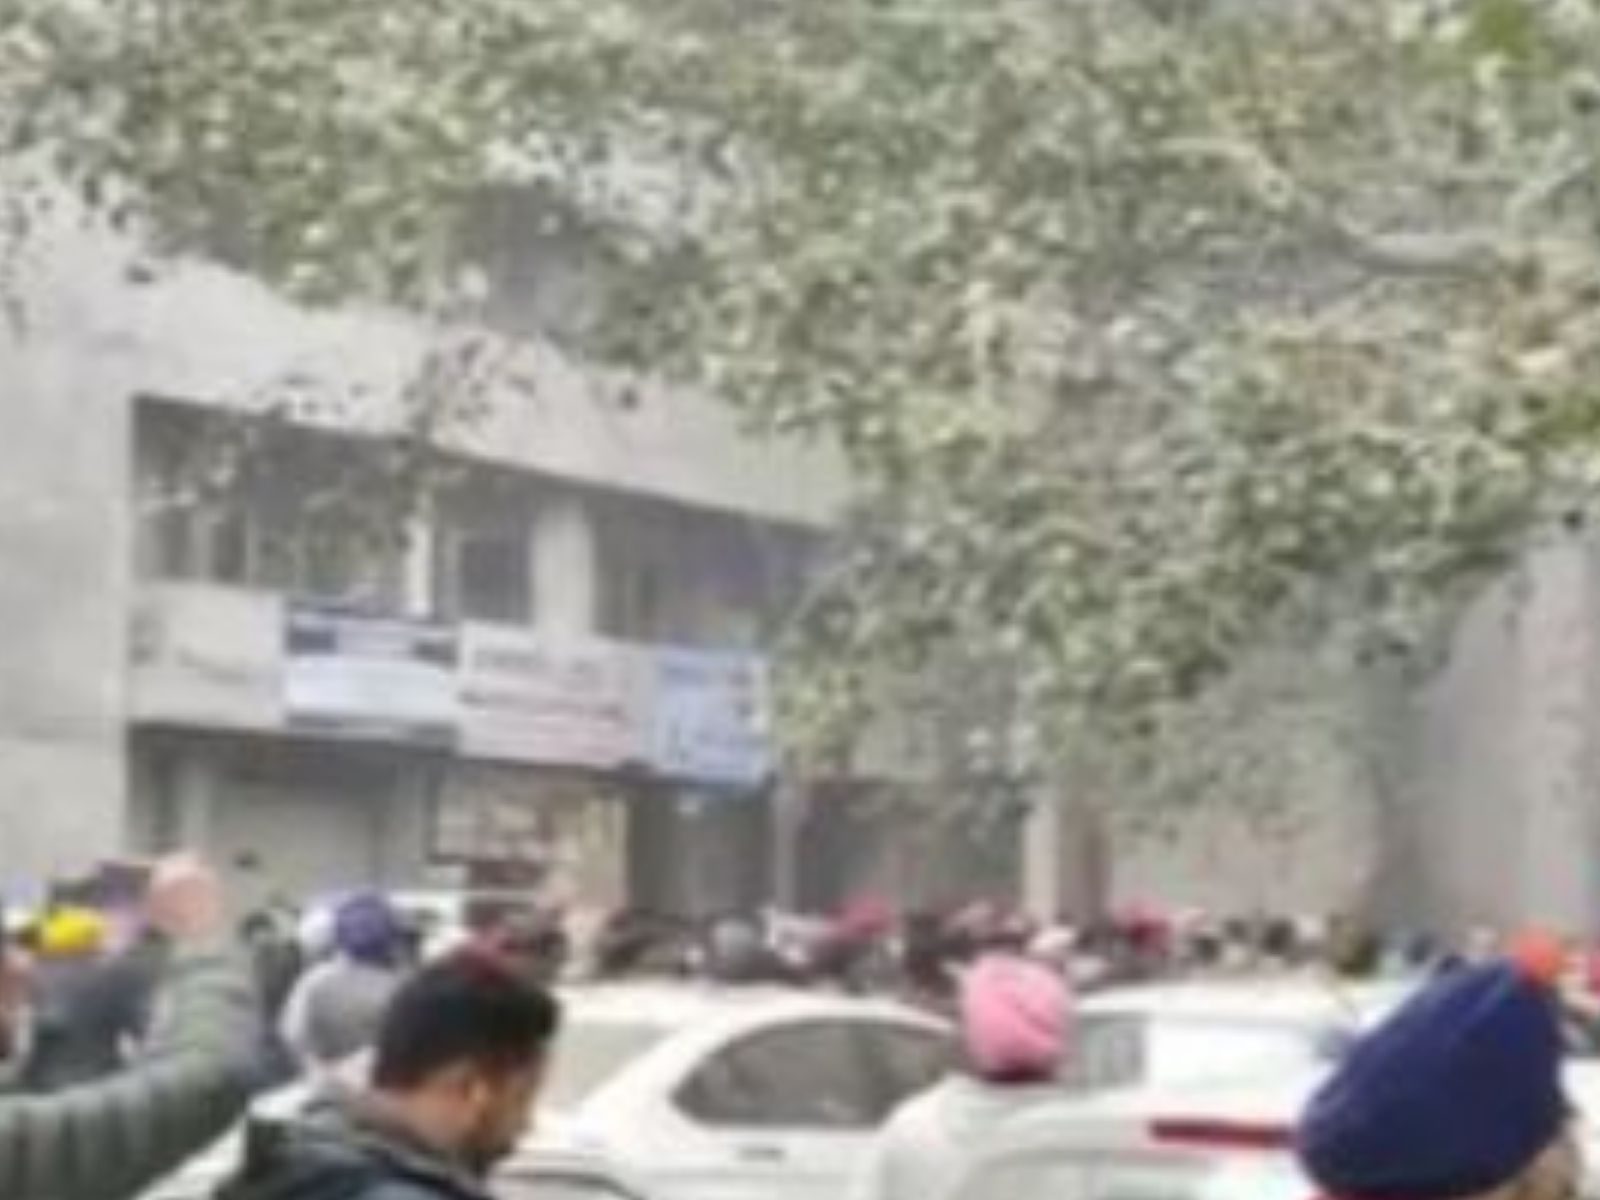 Ludhiana Court Blast:  ਕੇਂਦਰ ਨੇ ਪੰਜਾਬ ਸਰਕਾਰ ਤੋਂ ਮੰਗੀ ਰਿਪੋਰਟ